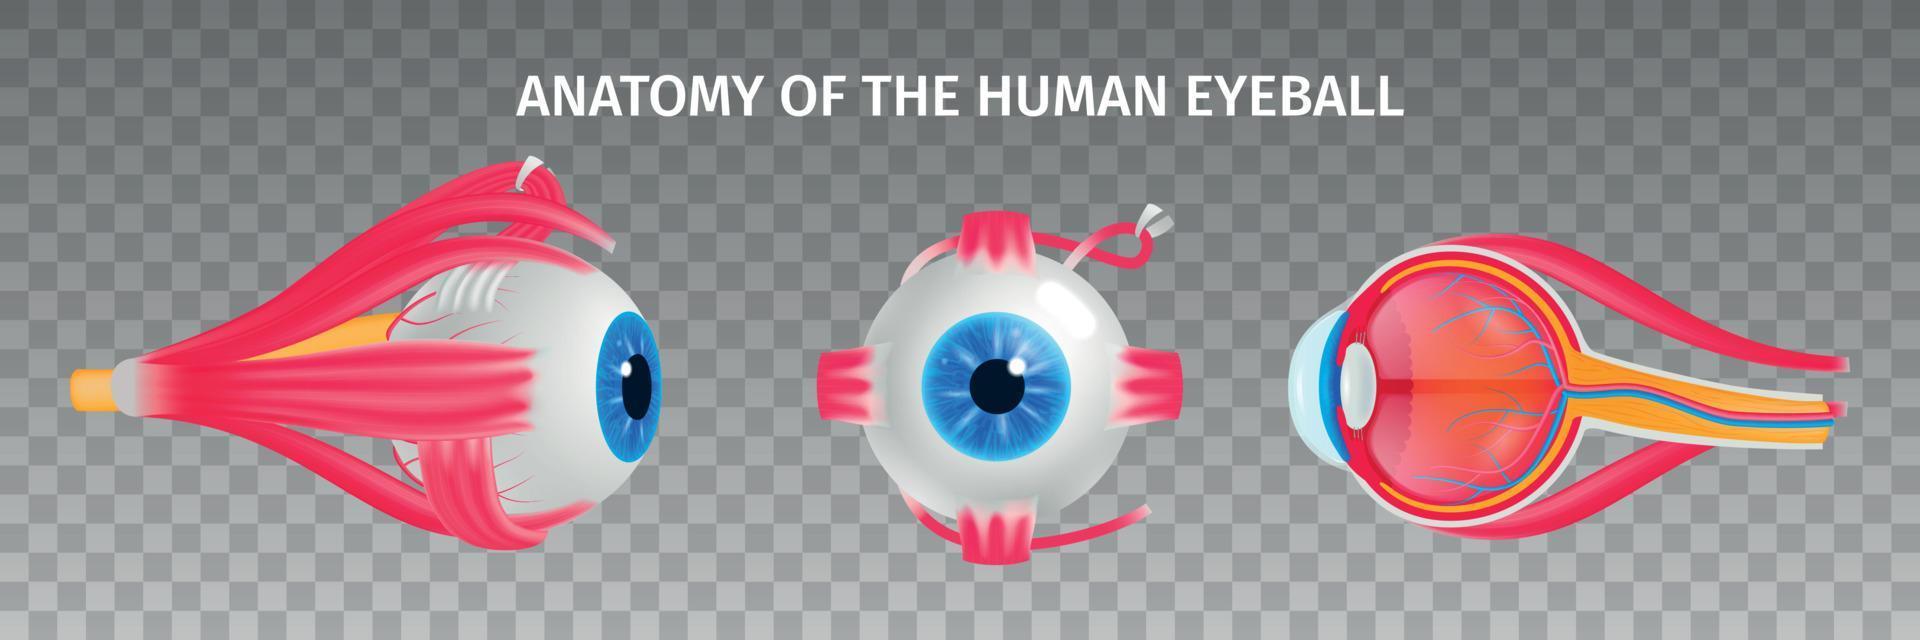 set trasparente di anatomia dell'occhio umano vettore